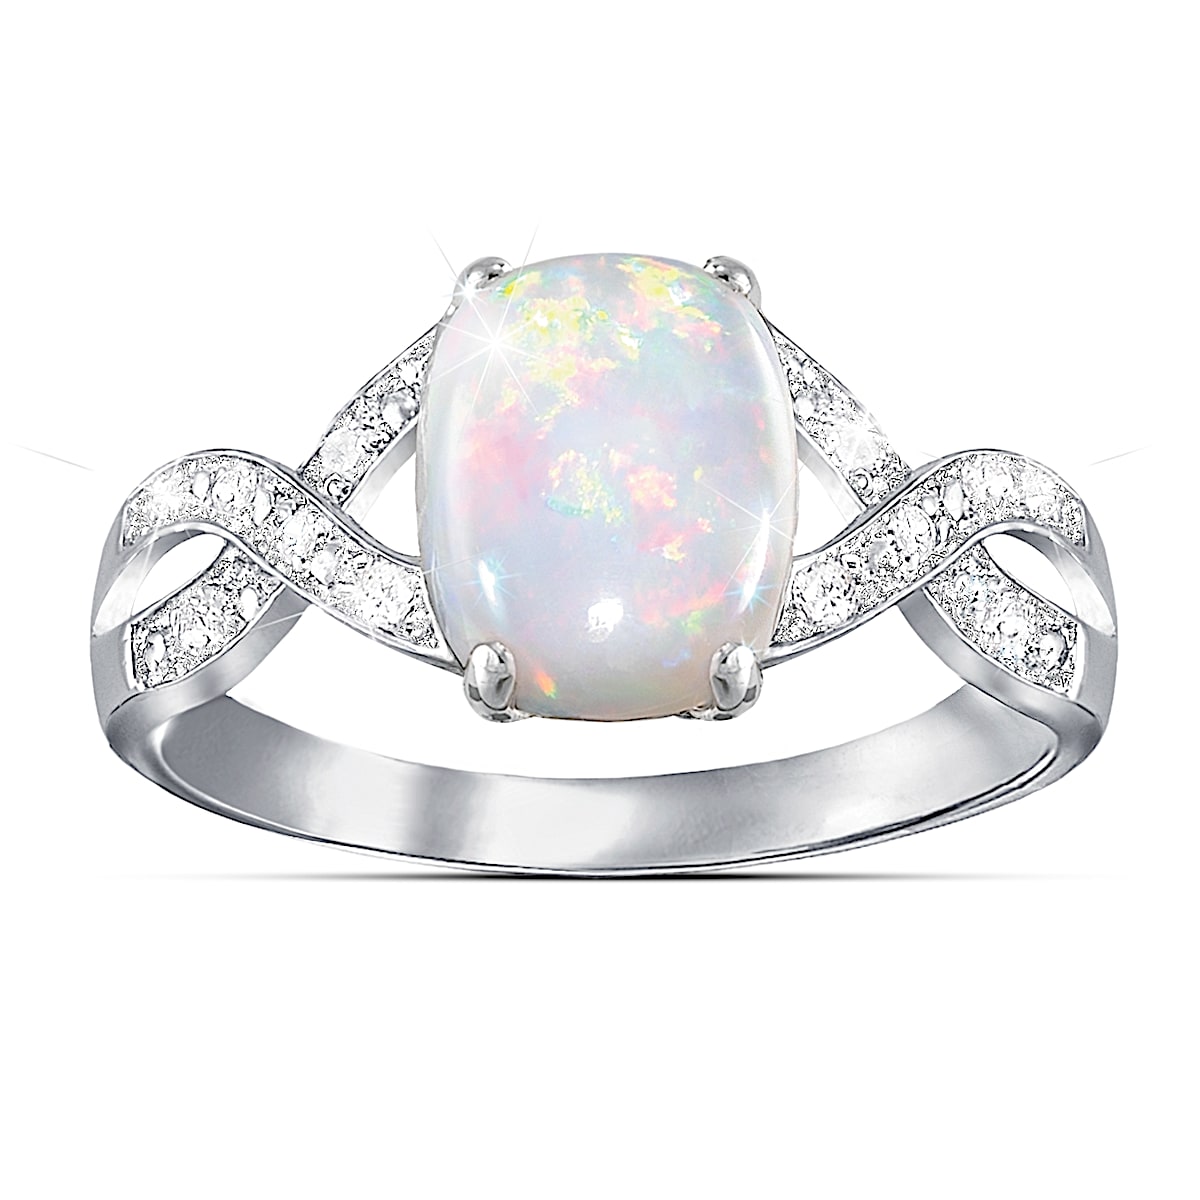 Australian Opal Ring - Underwoods Jewelers